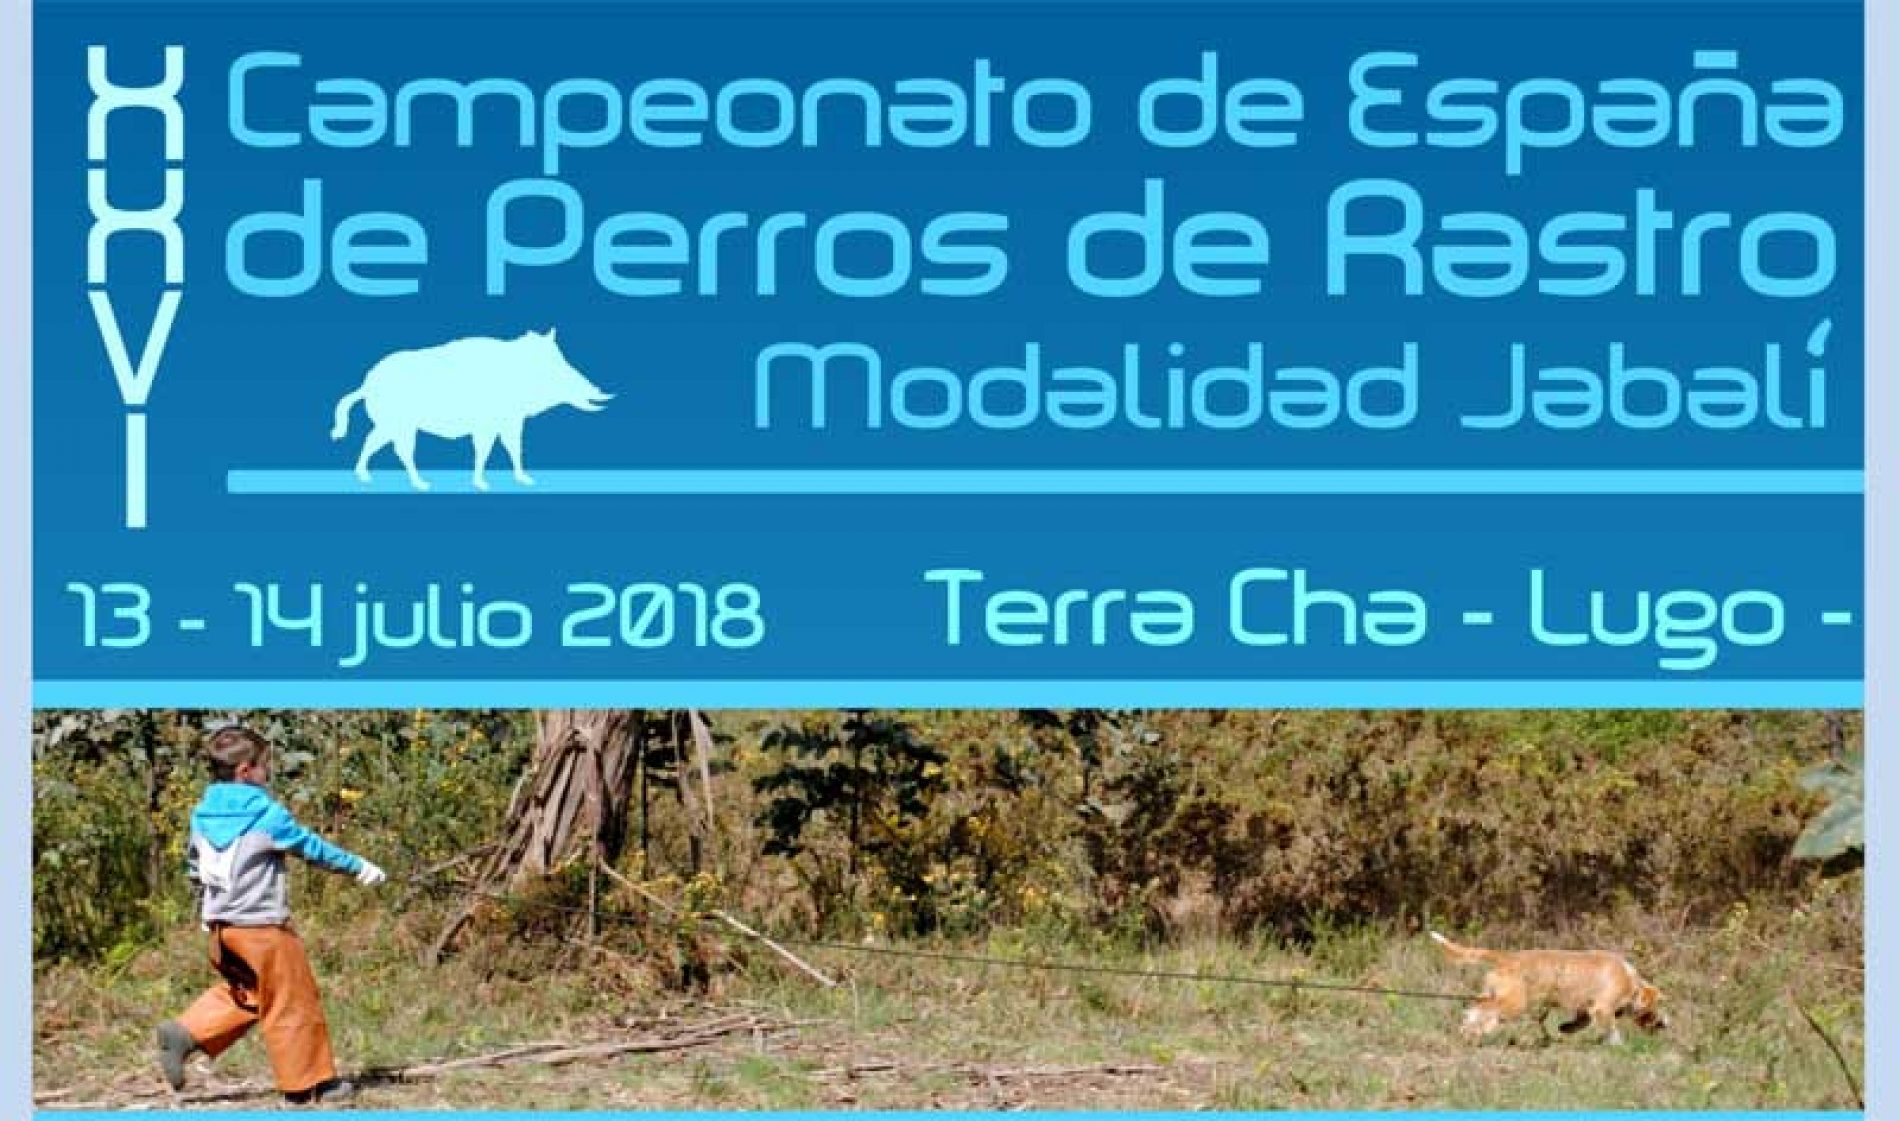 XXVI Campeonato de España de Perros de Rastro, modalidad Jabalí